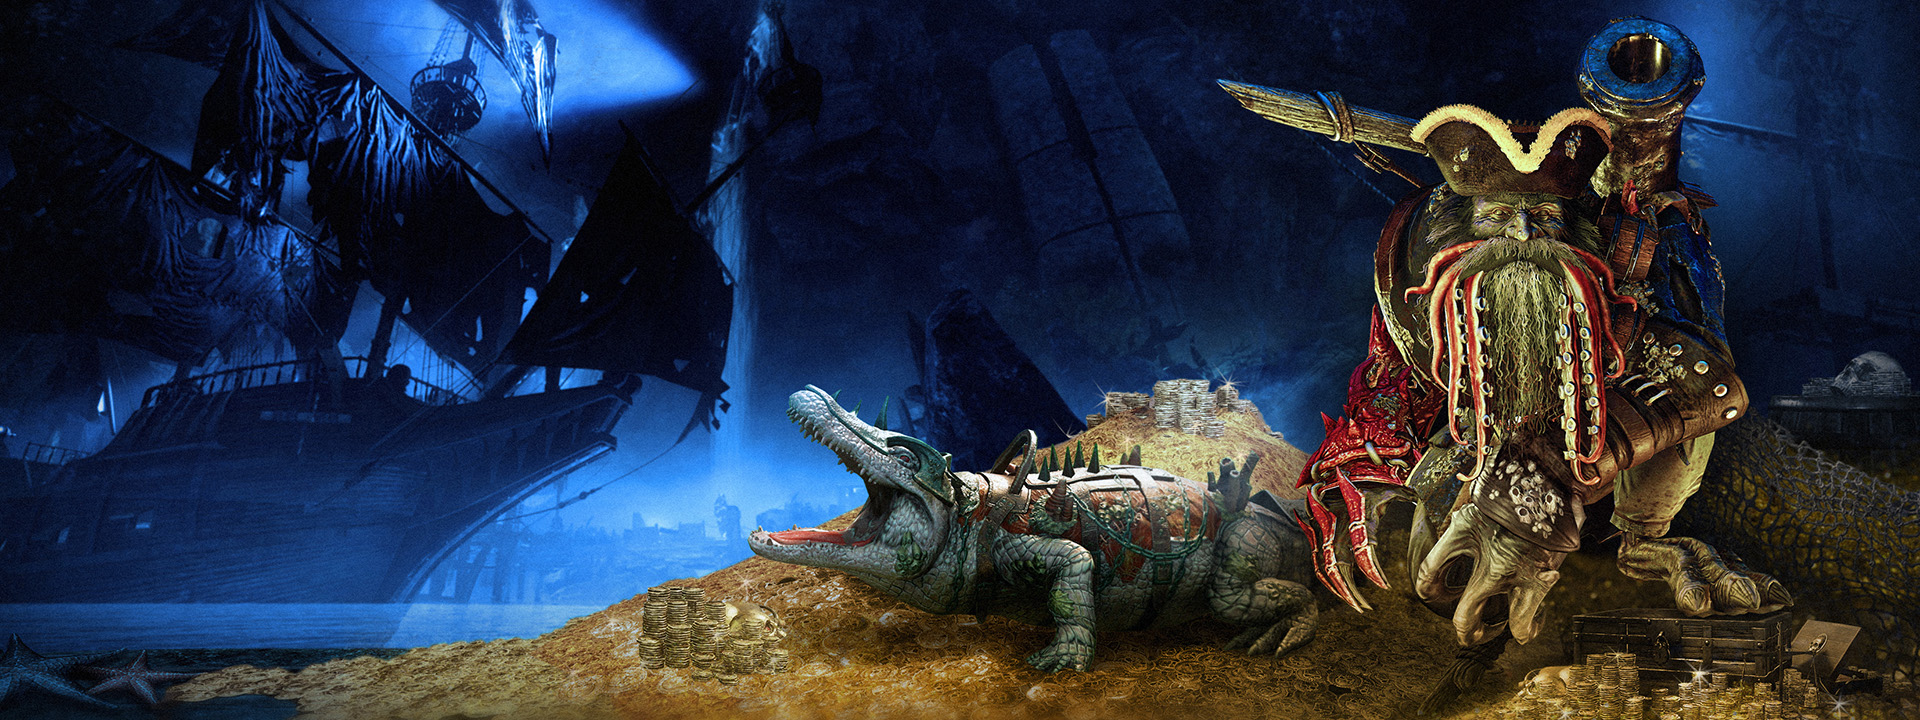 Immagine della missione Cirripedi e polvere da sparo raffigurante un pirata non morto e un alligatore in armatura.